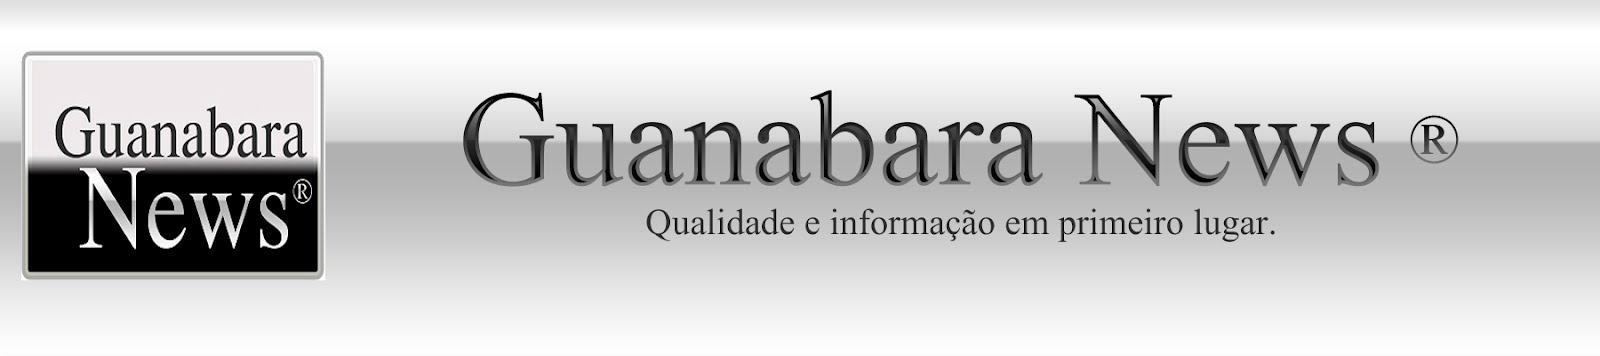 Guanabara News ®